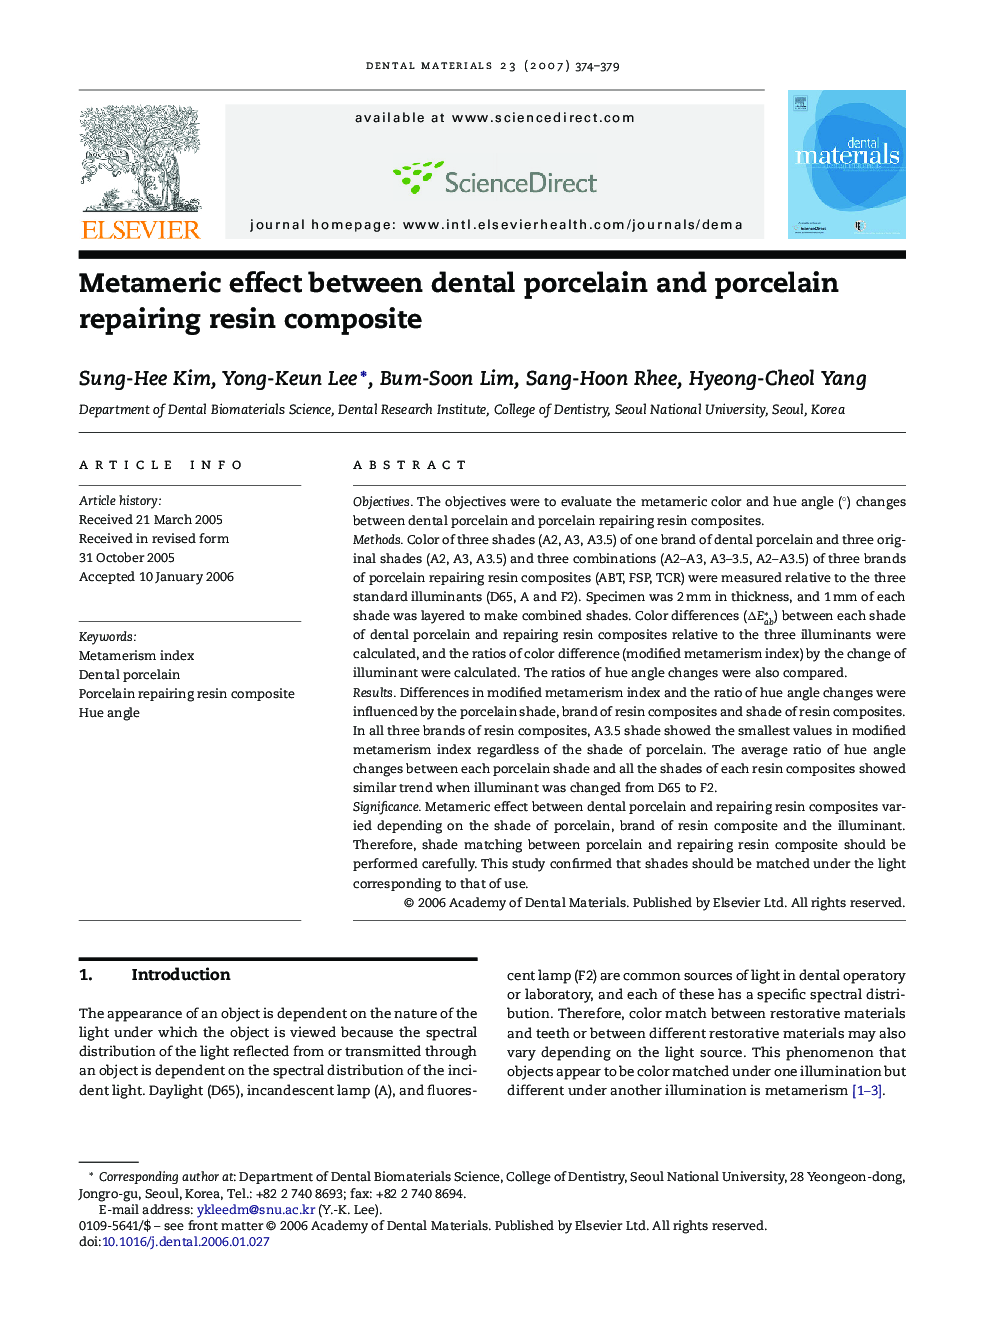 Metameric effect between dental porcelain and porcelain repairing resin composite